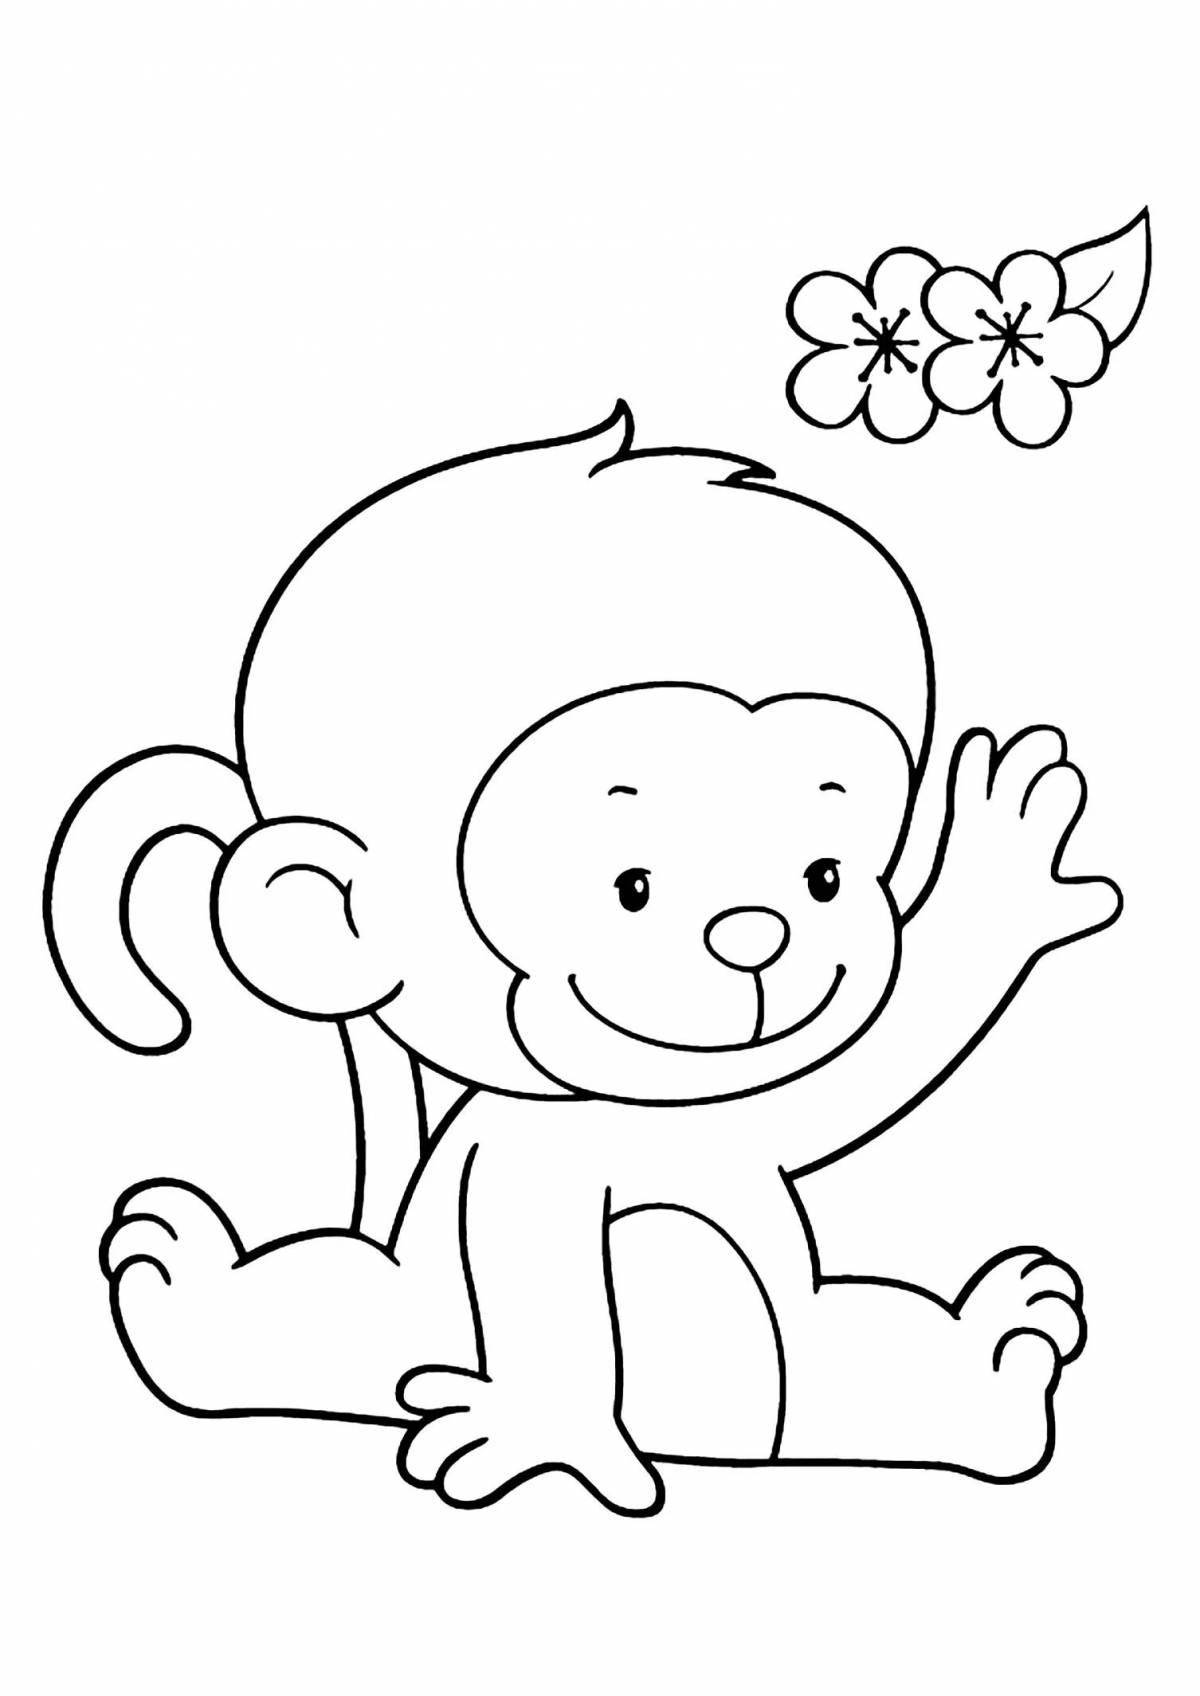 Забавная раскраска обезьянка